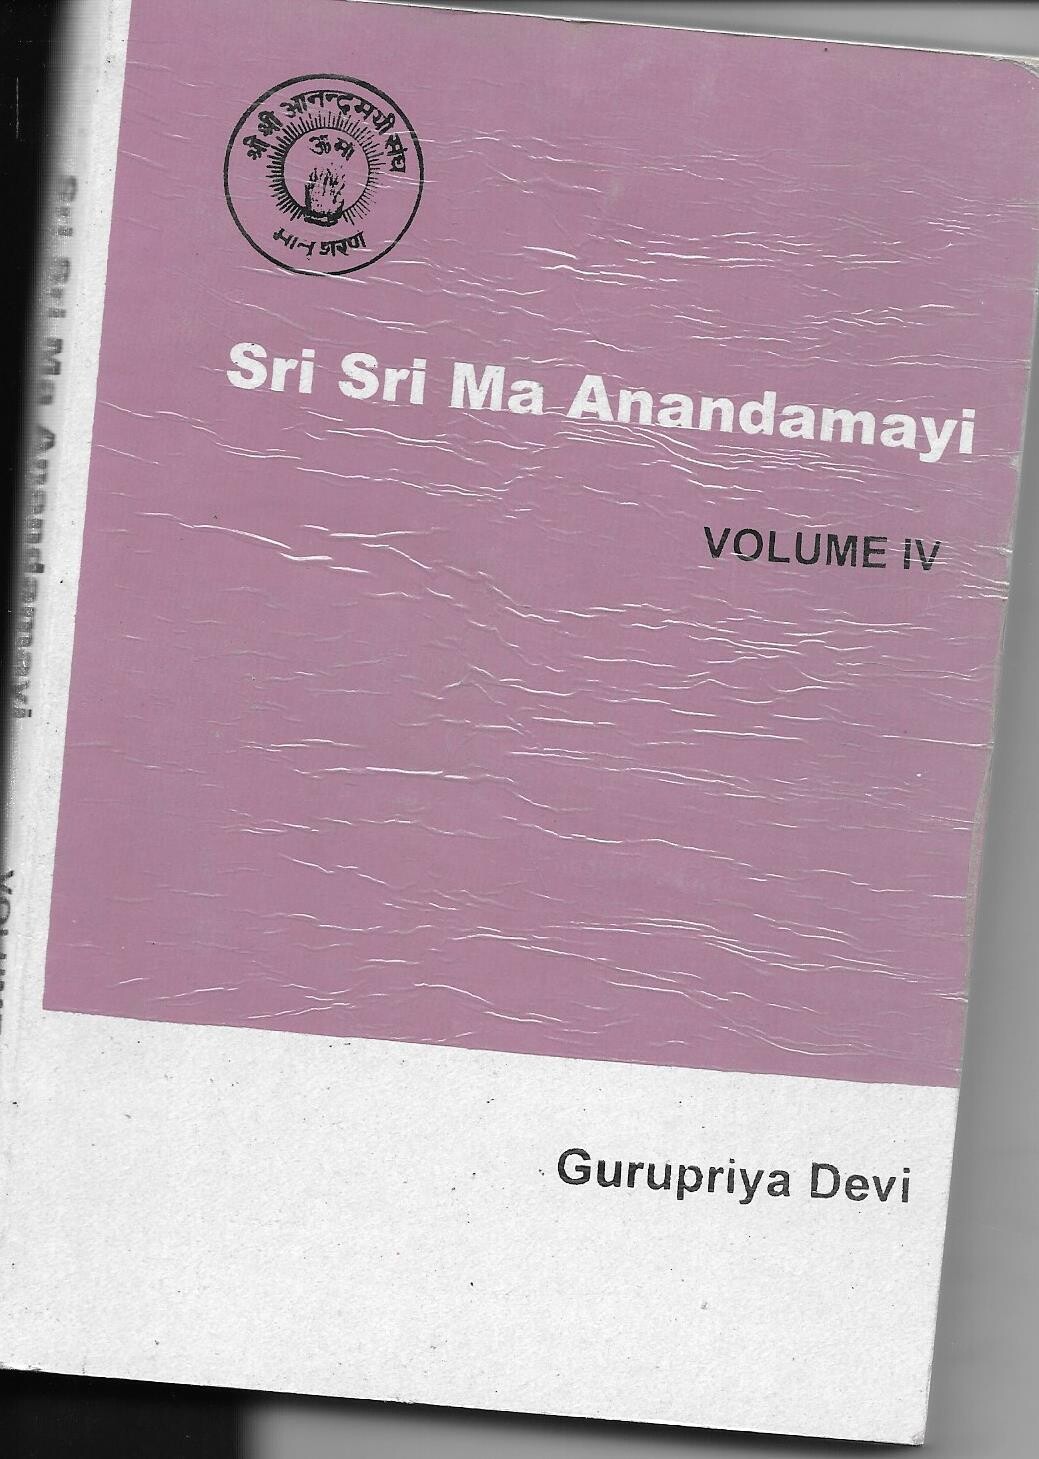 In Association with Sri Sri Ma Anandamayi (vol IV)